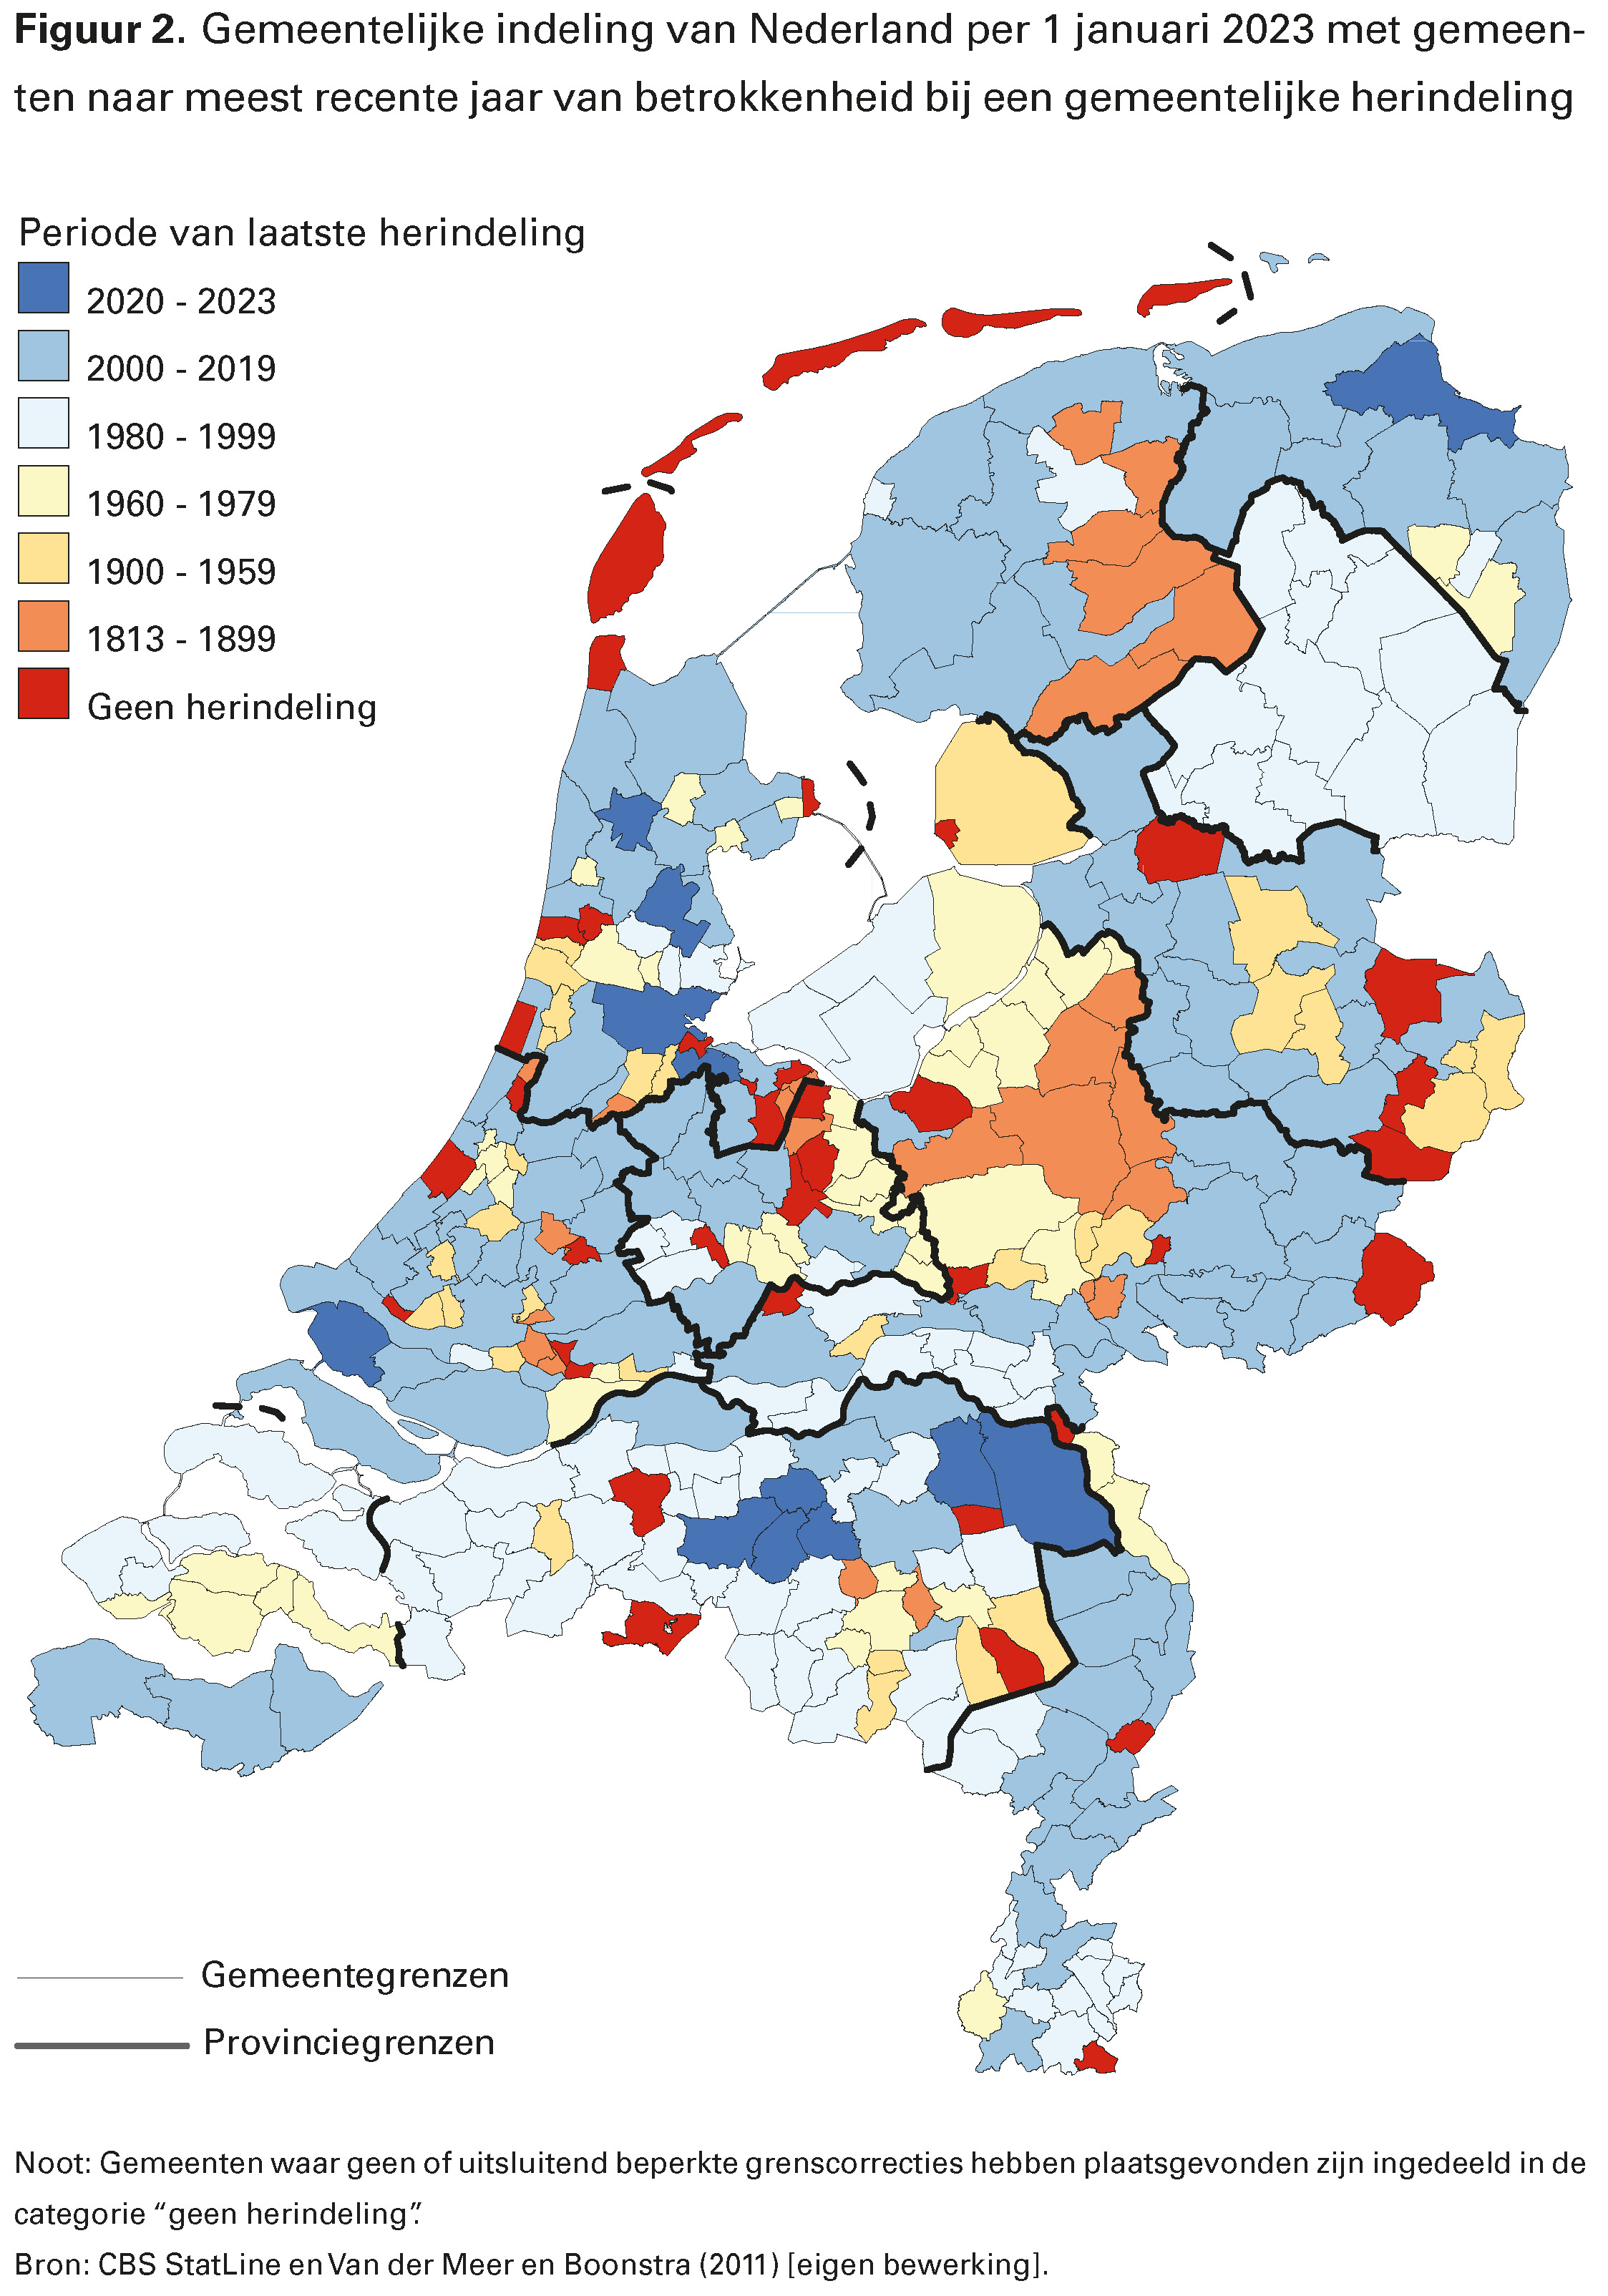 Figuur 2. Gemeentelijke indeling van Nederland per 1 januari 2023 met gemeenten naar meest recente jaar van betrokkenheid bij een gemeentelijke herindeling